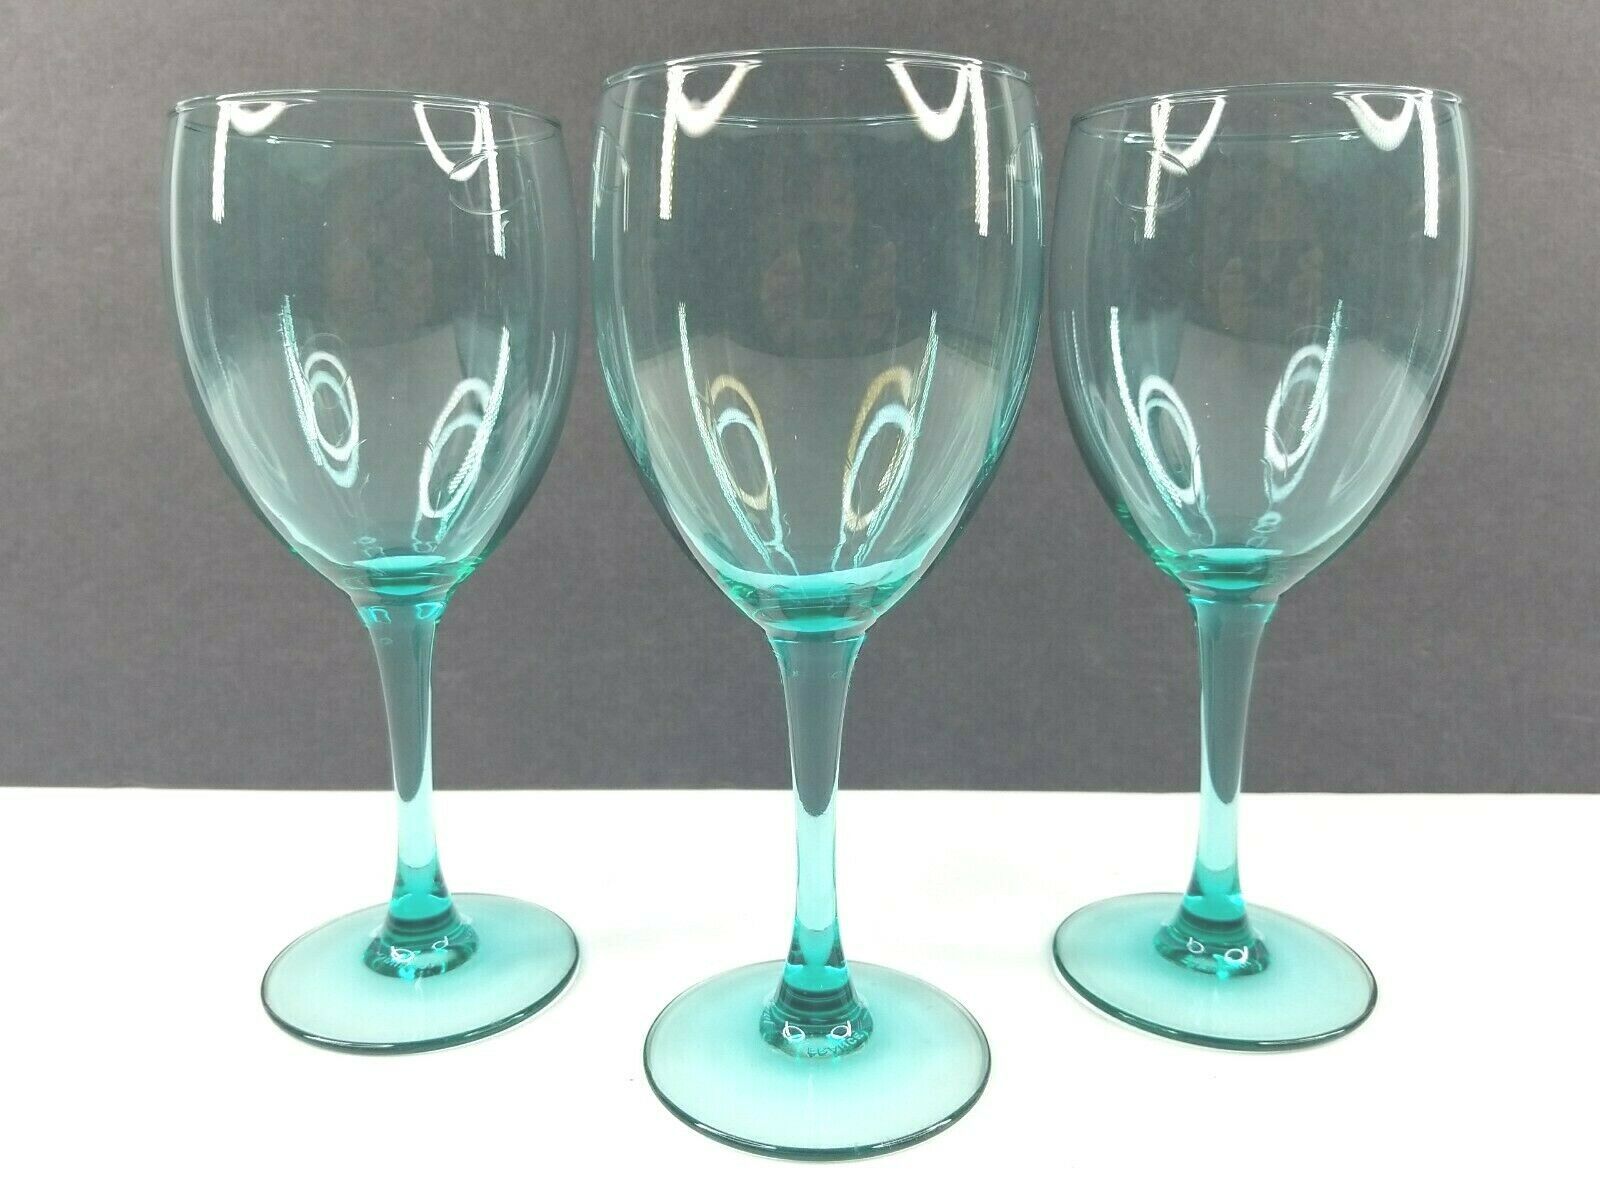 NEW Set TEAL SHORT STEM Beverage Goblets/Glasses 12oz 5.25" 3 LOTS Available 4 